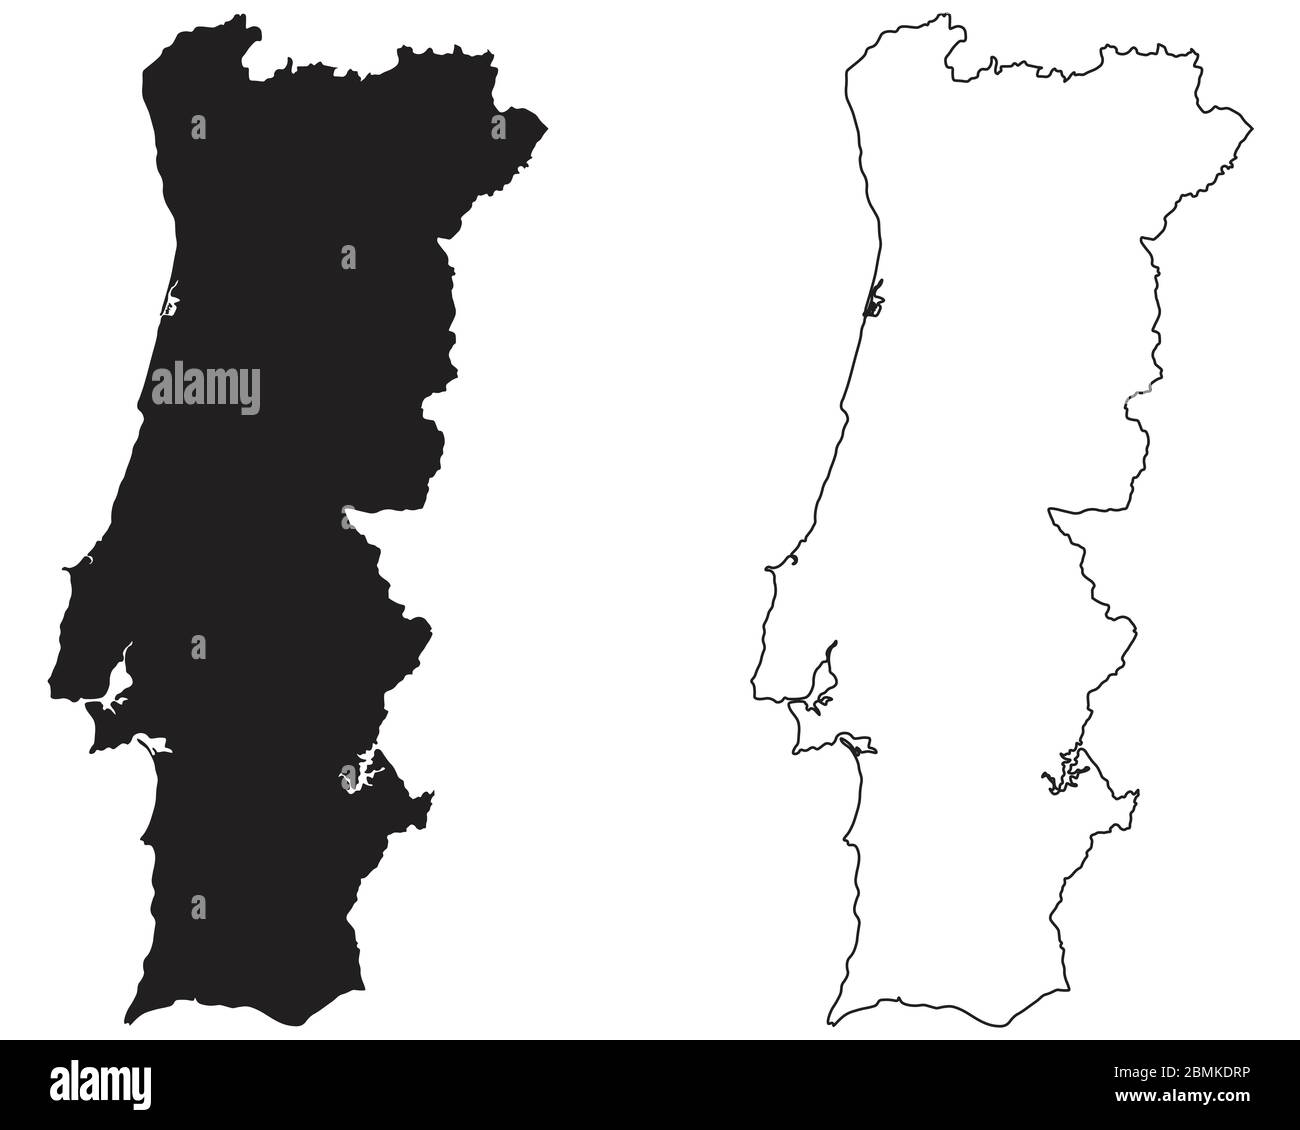 Länderkarte Portugal. Schwarze Silhouette und Umriss isoliert auf weißem Hintergrund. EPS-Vektor Stock Vektor